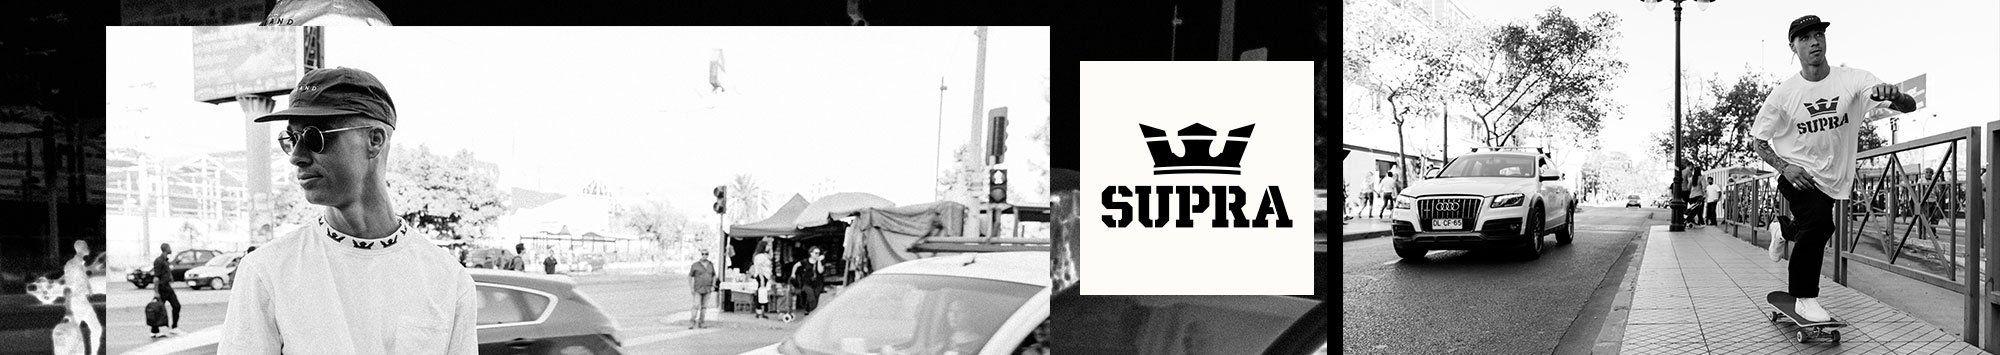 Supra Shoes Logo - Supra Shoes